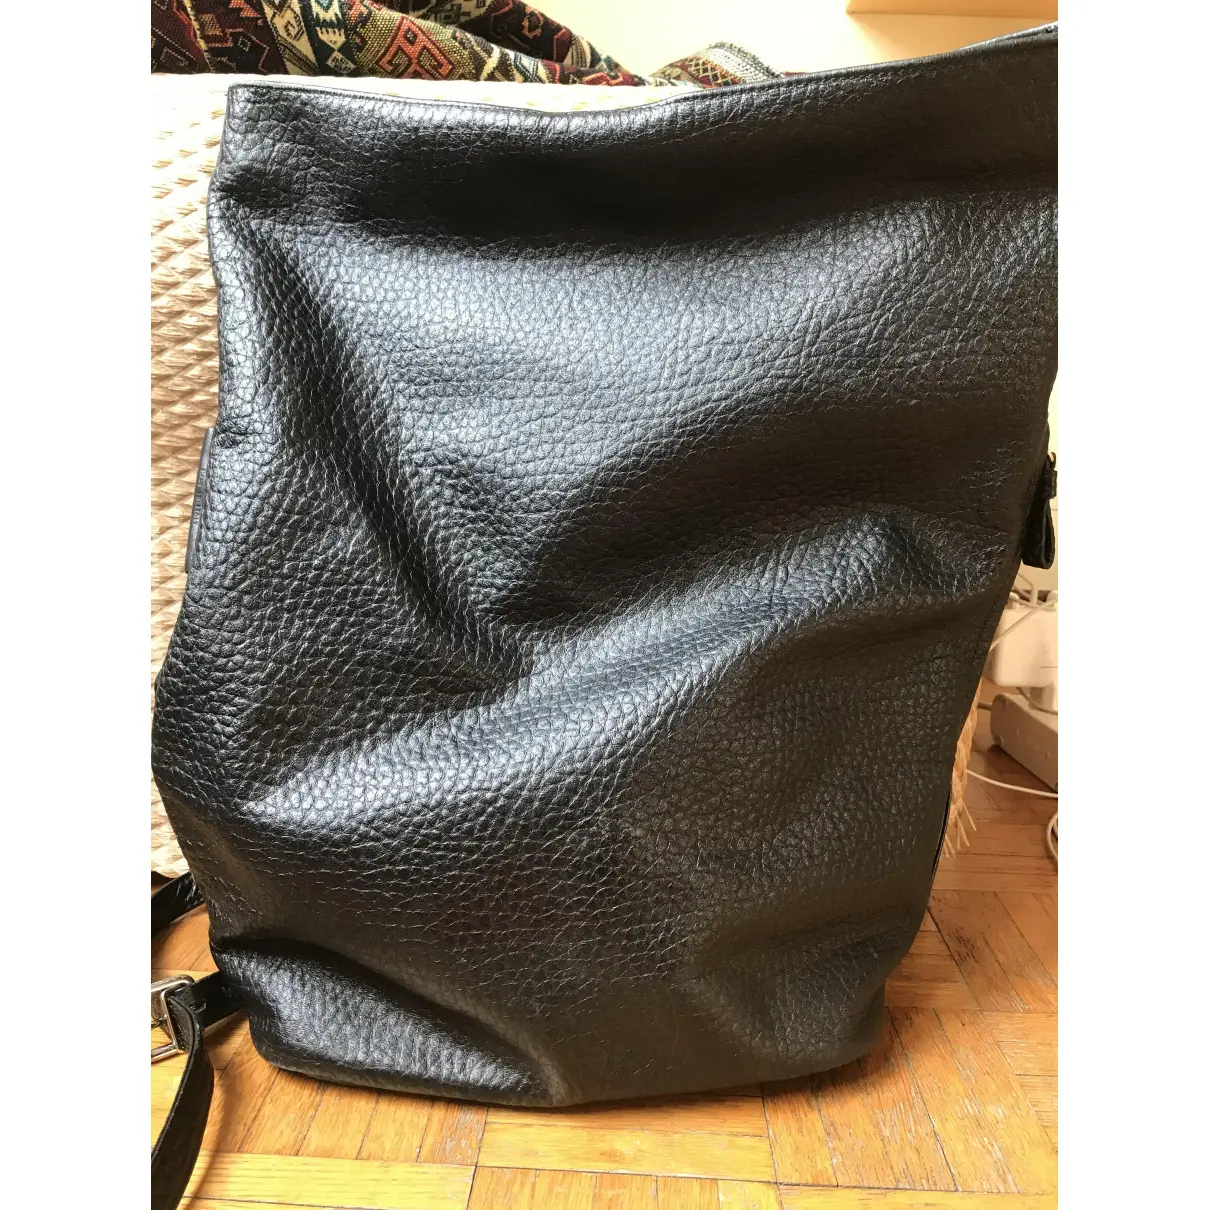 Leather bag Andrea Incontri